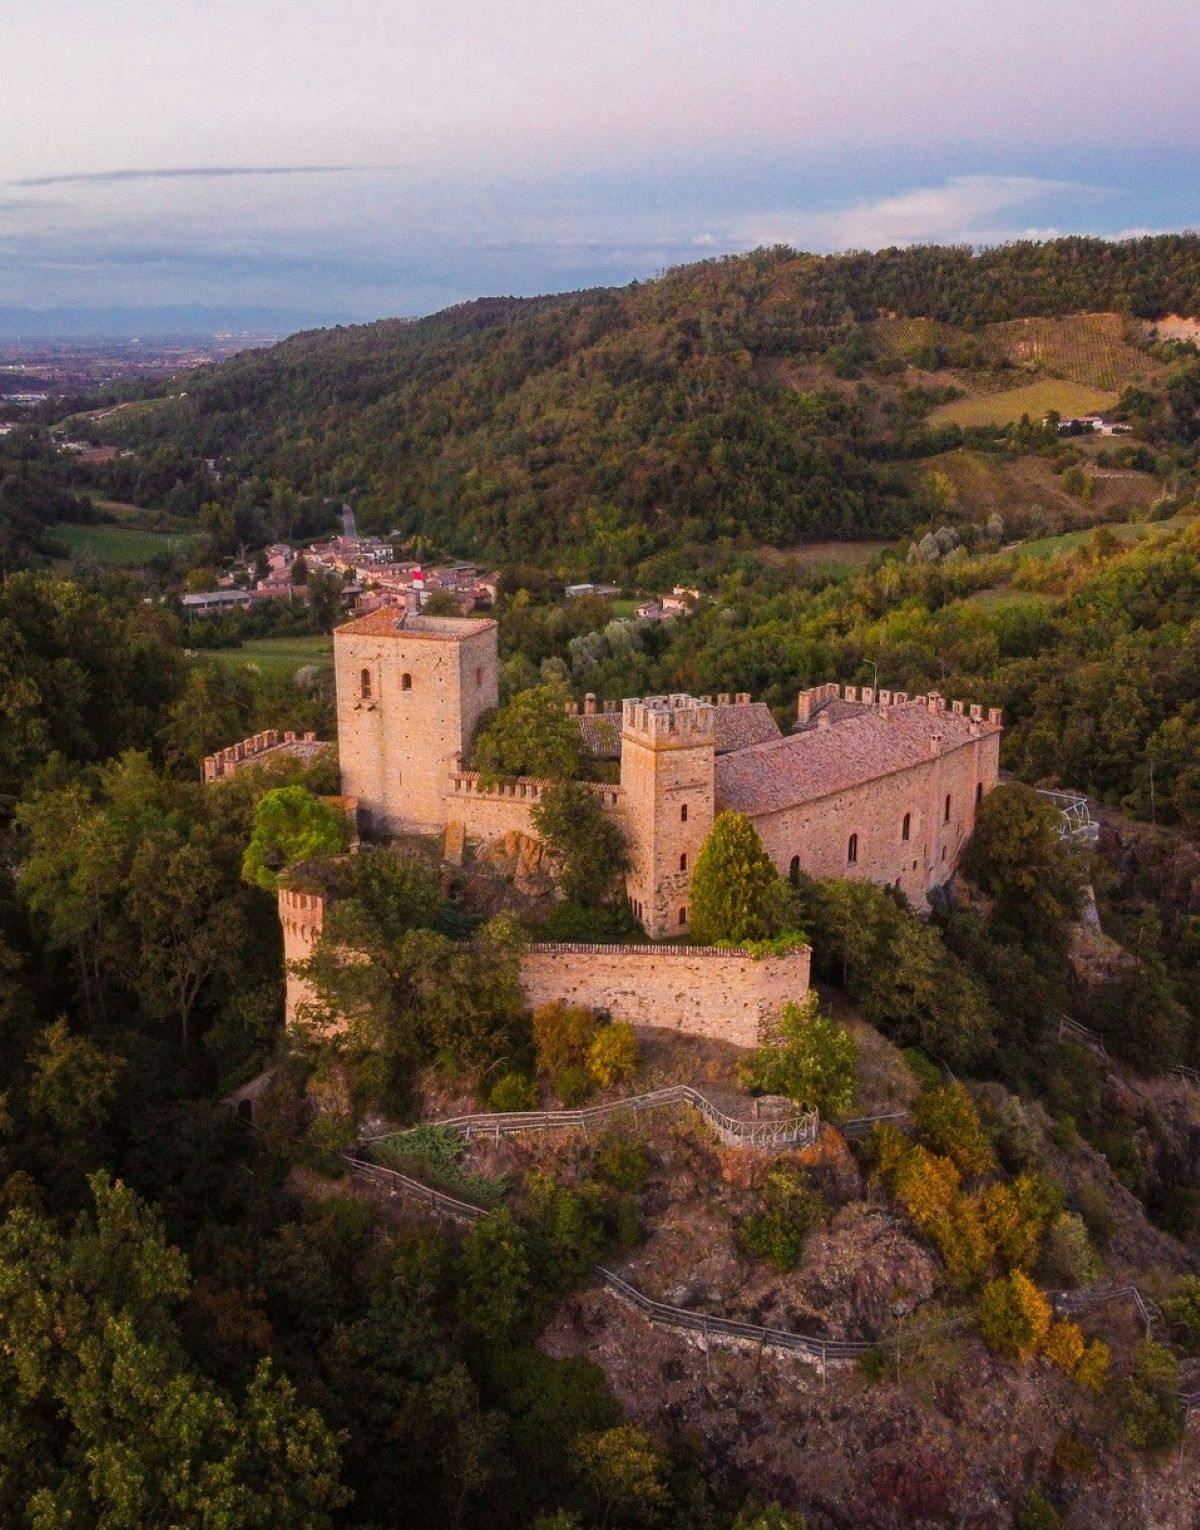 Gropparello Castle begeleide historische rondleiding